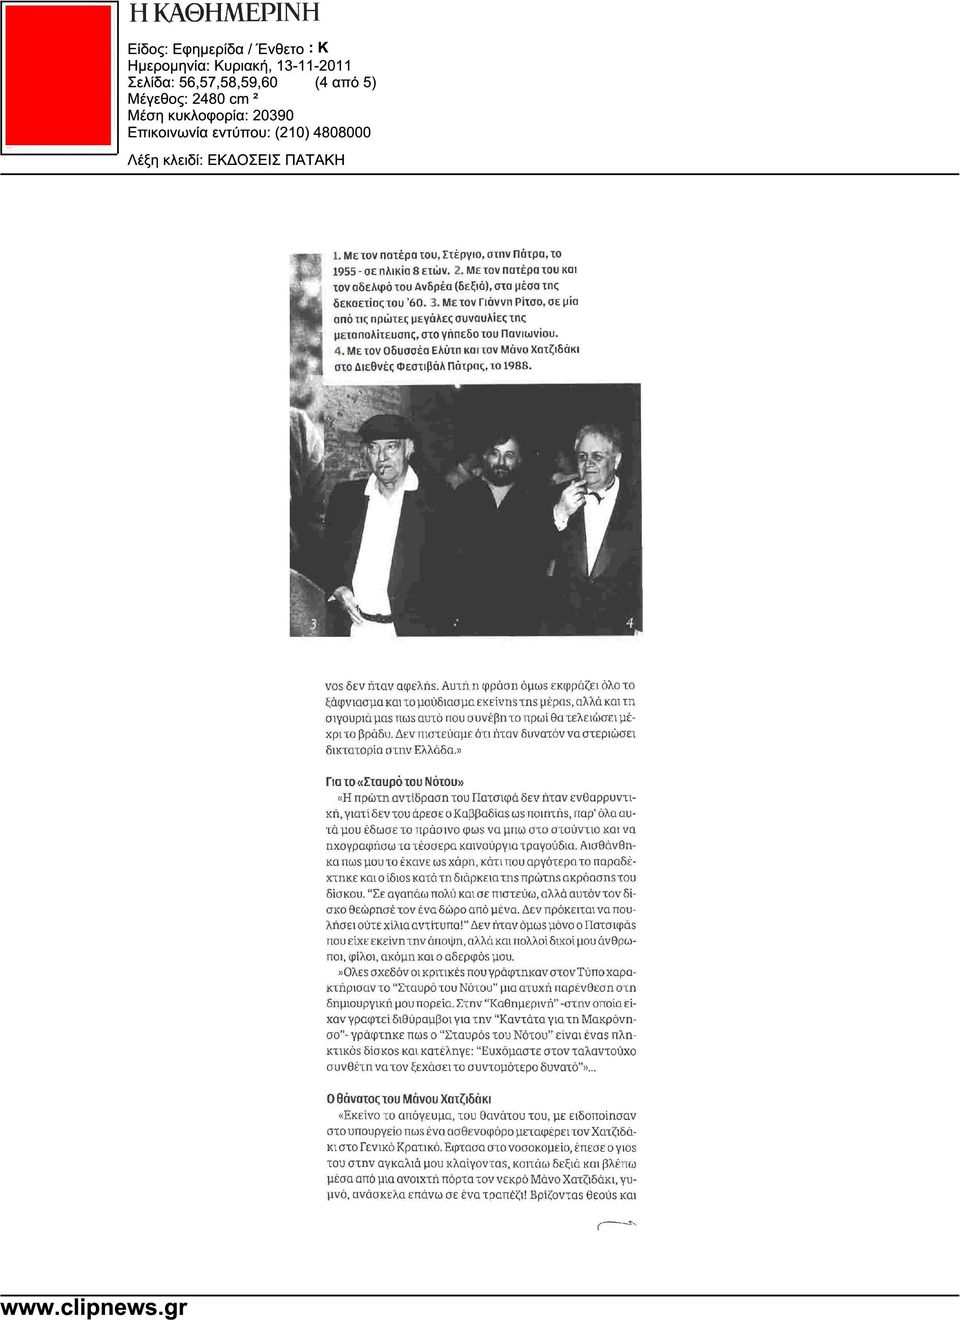 Με τον Οδυσσέα Ελύτη και τον Μάνο Χατζιδάκι στο ιεθνές Φεστιβάλ Πάτρας, το 1988. vos δεν ήταν αφελής.